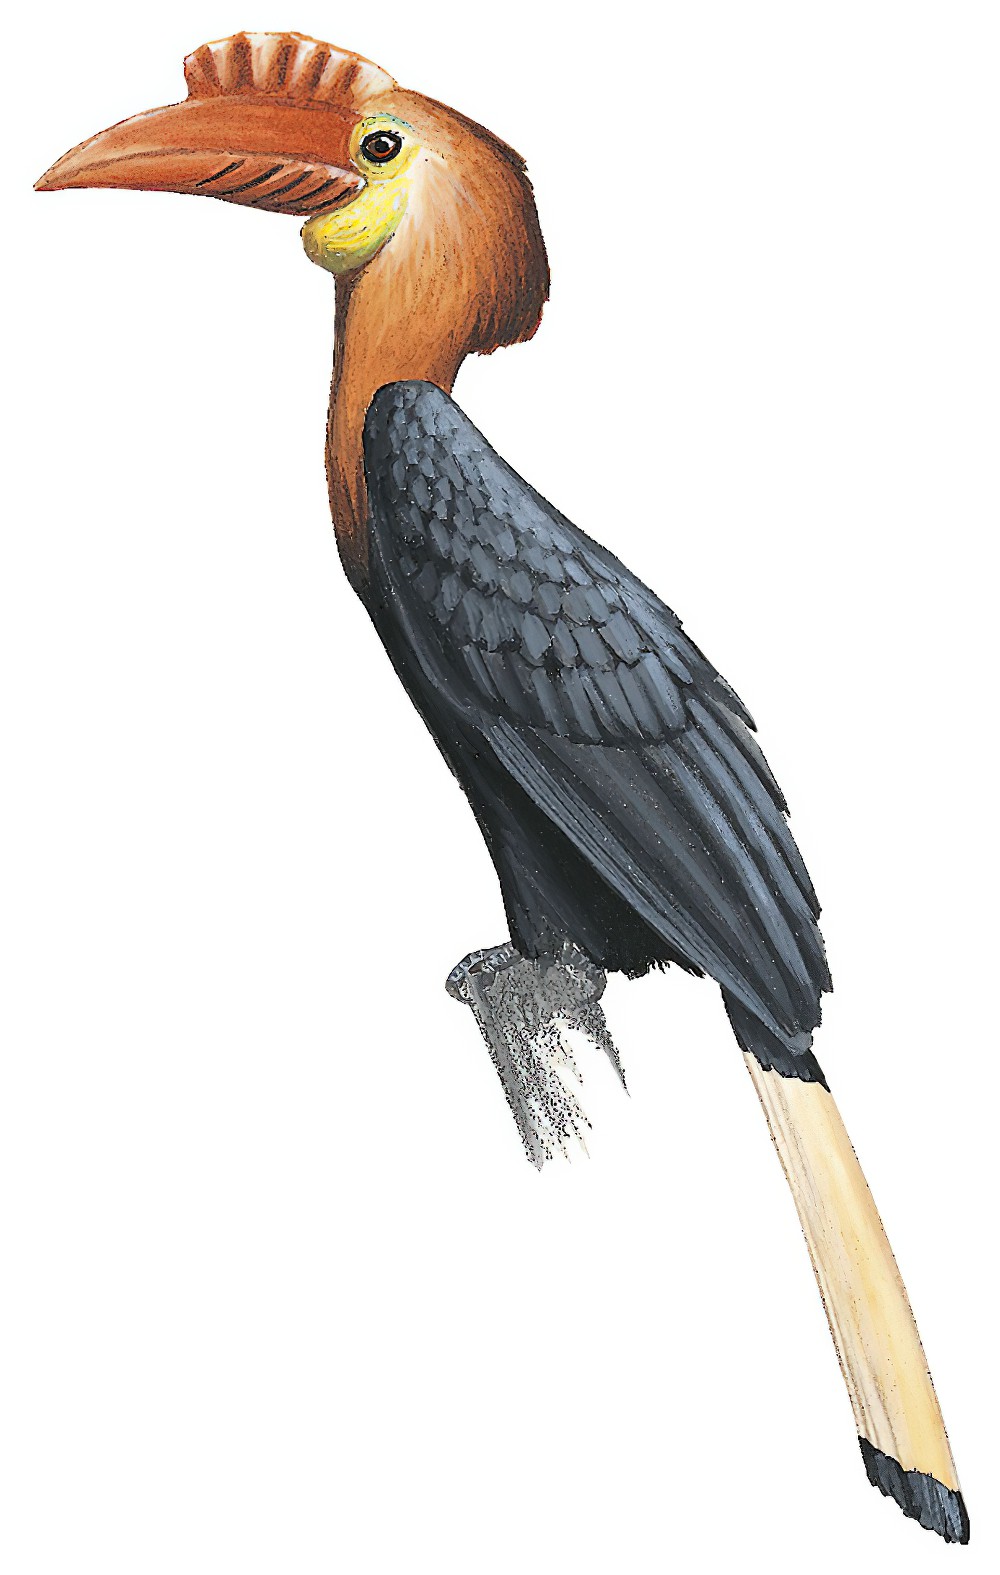 Writhe-billed Hornbill / Rhabdotorrhinus waldeni